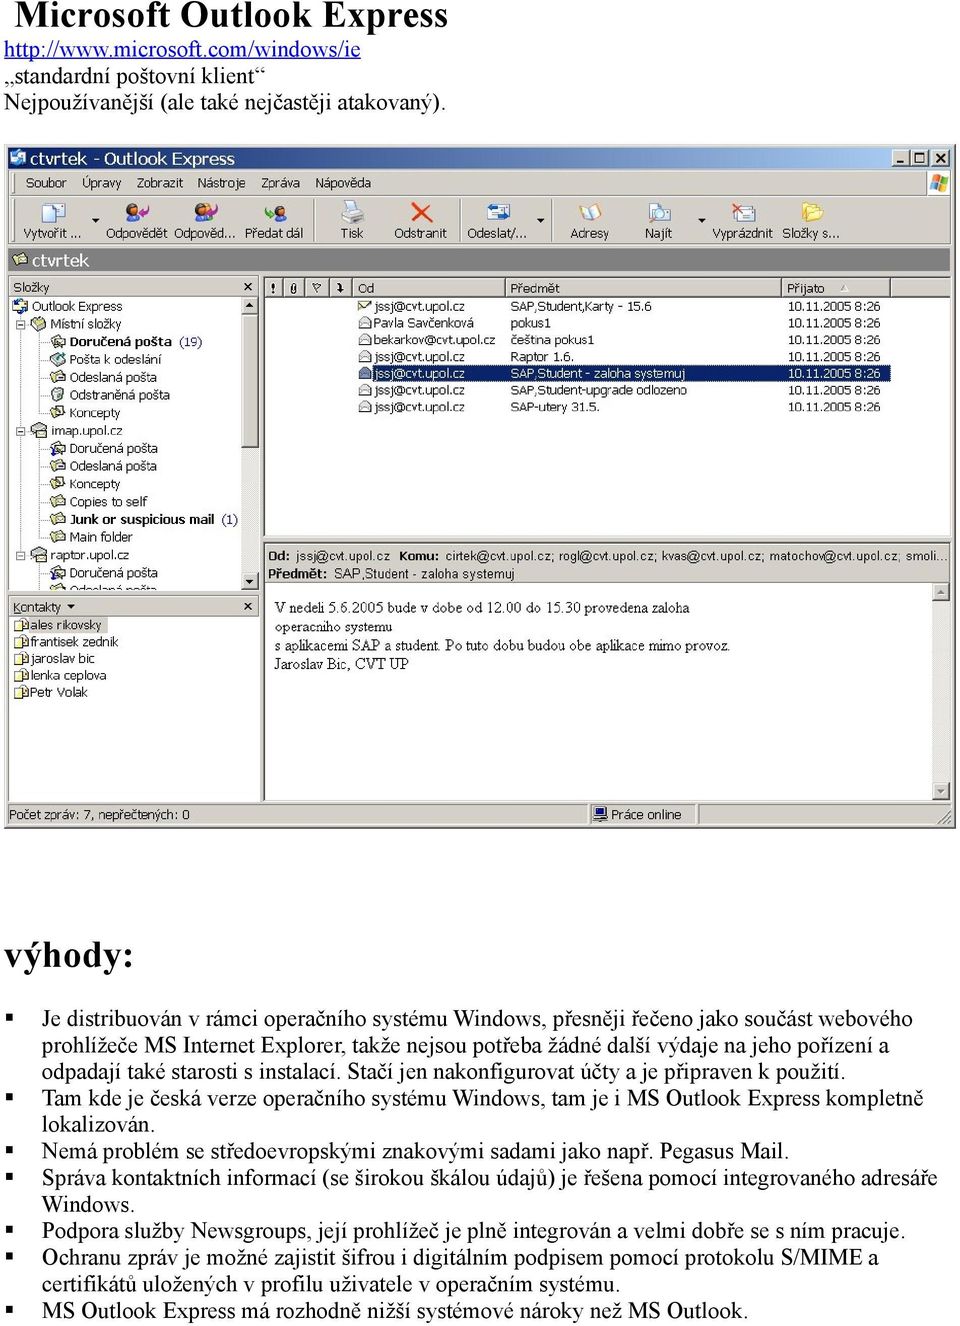 také starosti s instalací. Stačí jen nakonfigurovat účty a je připraven k použití. Tam kde je česká verze operačního systému Windows, tam je i MS Outlook Express kompletně lokalizován.